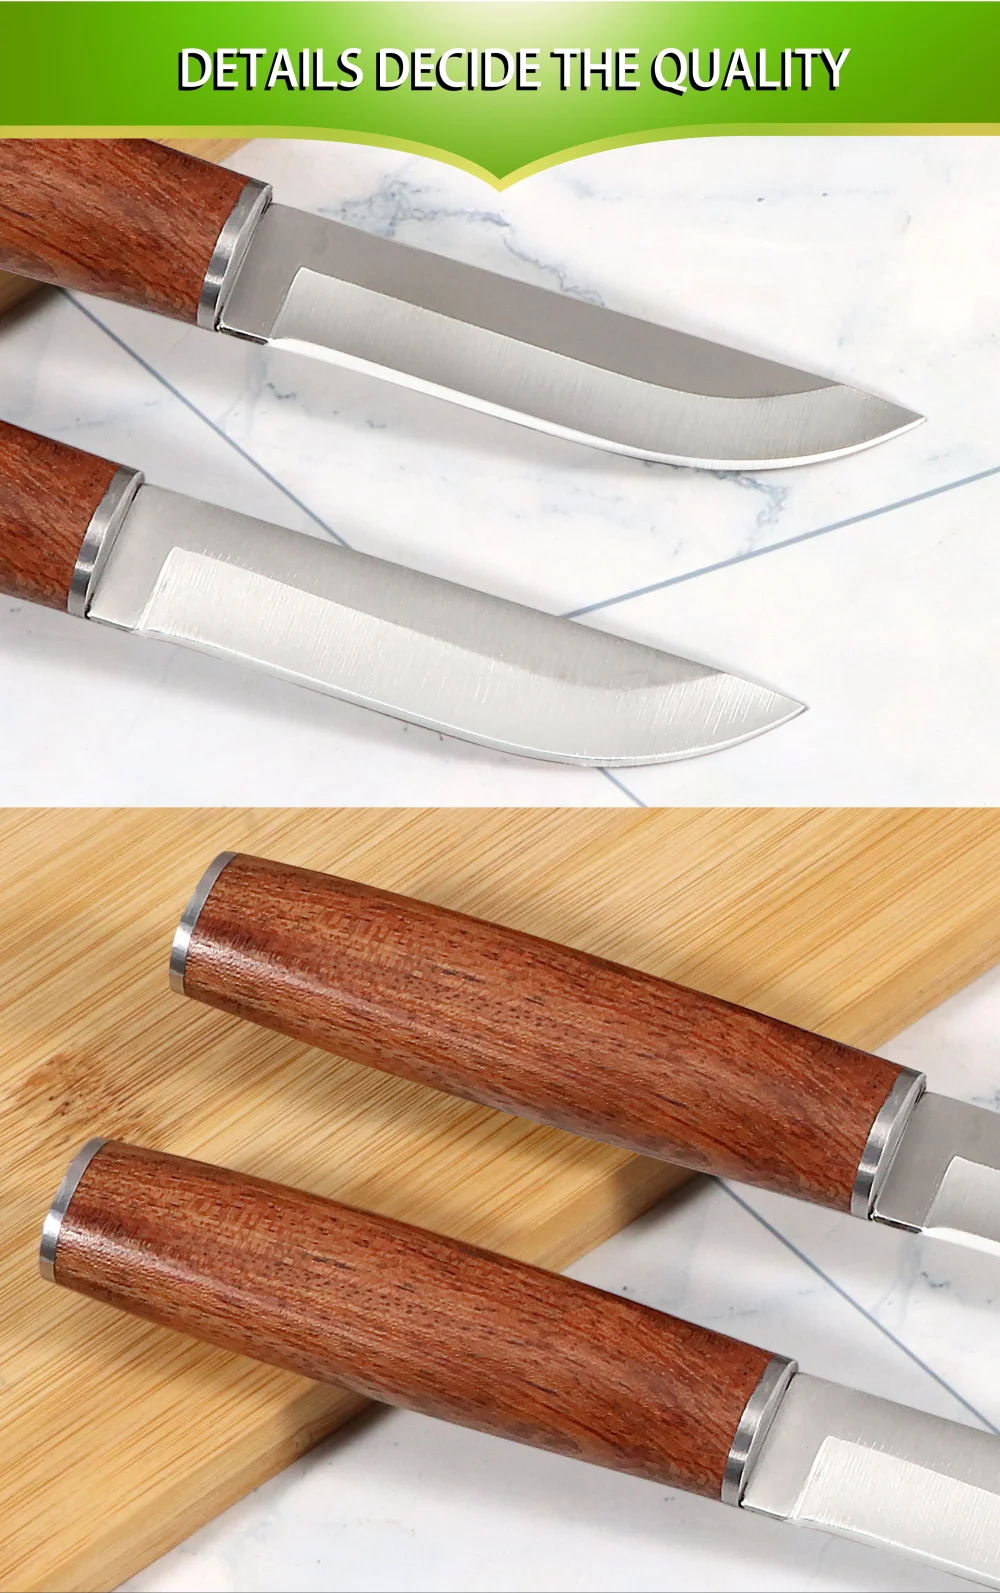 inoxidável faca multiuso peeling rosewood lidar com faca de cozinha utilitário